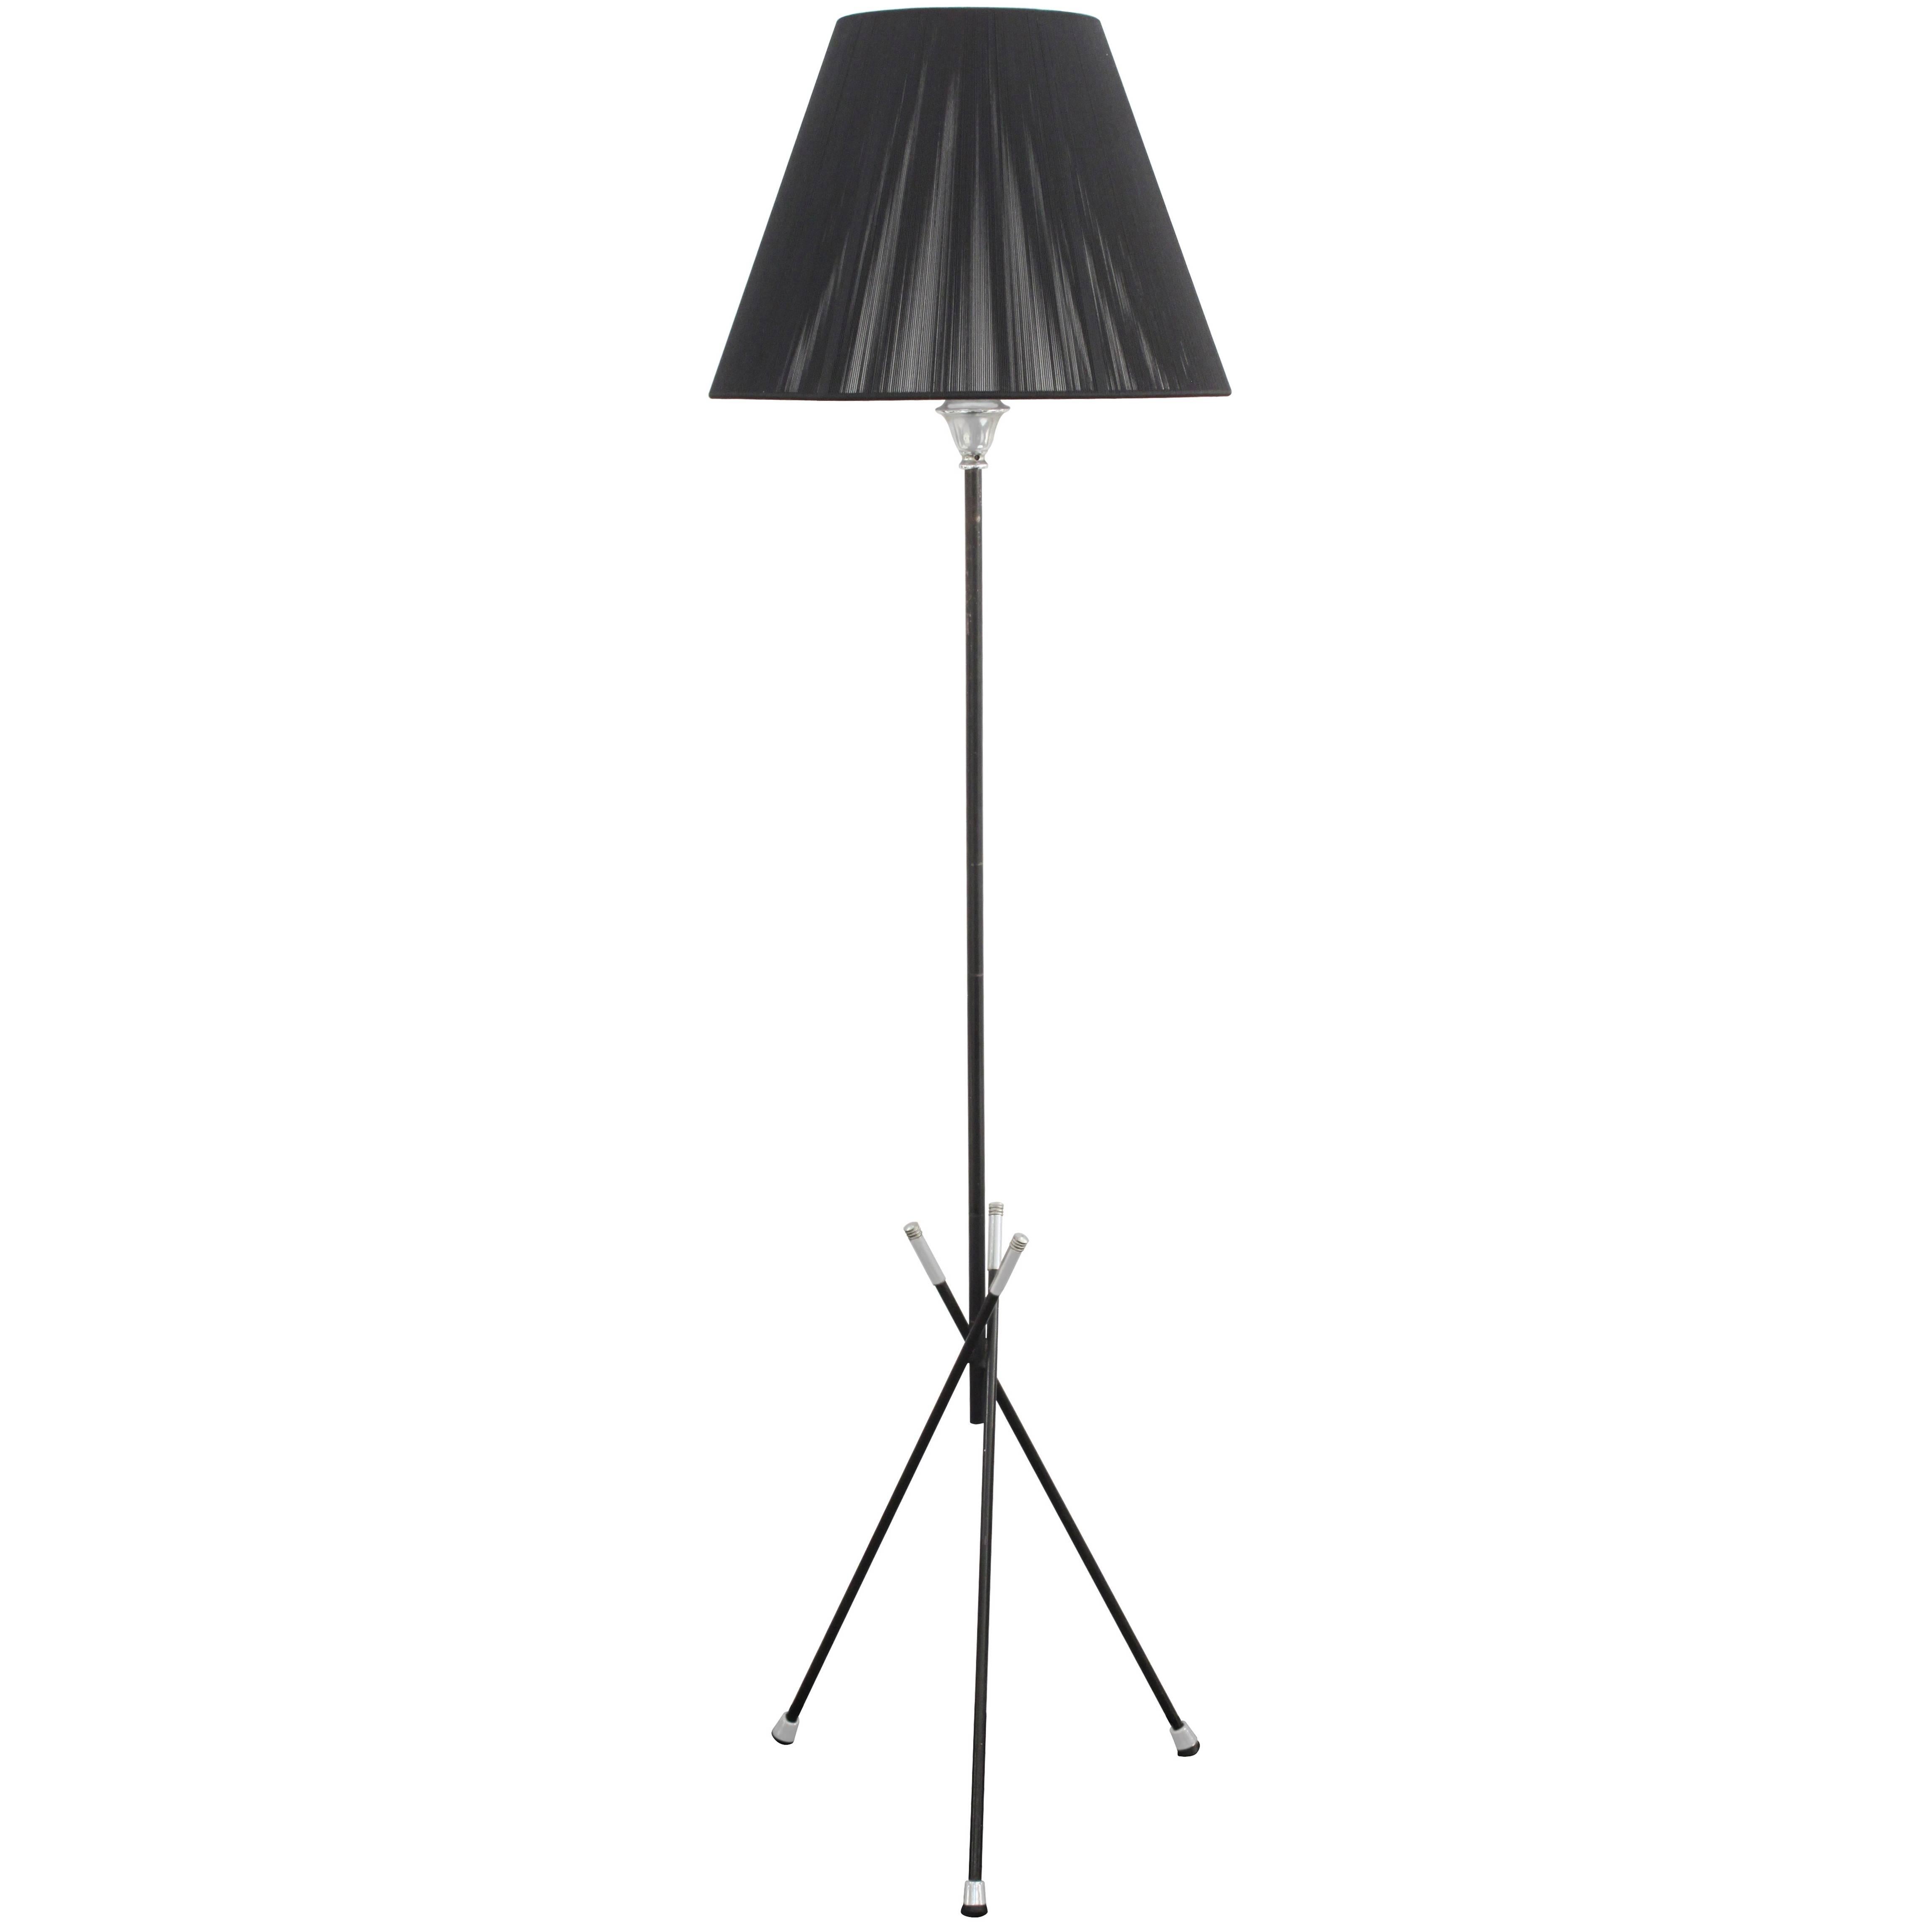 Elegant French Floor Lamp For Sale